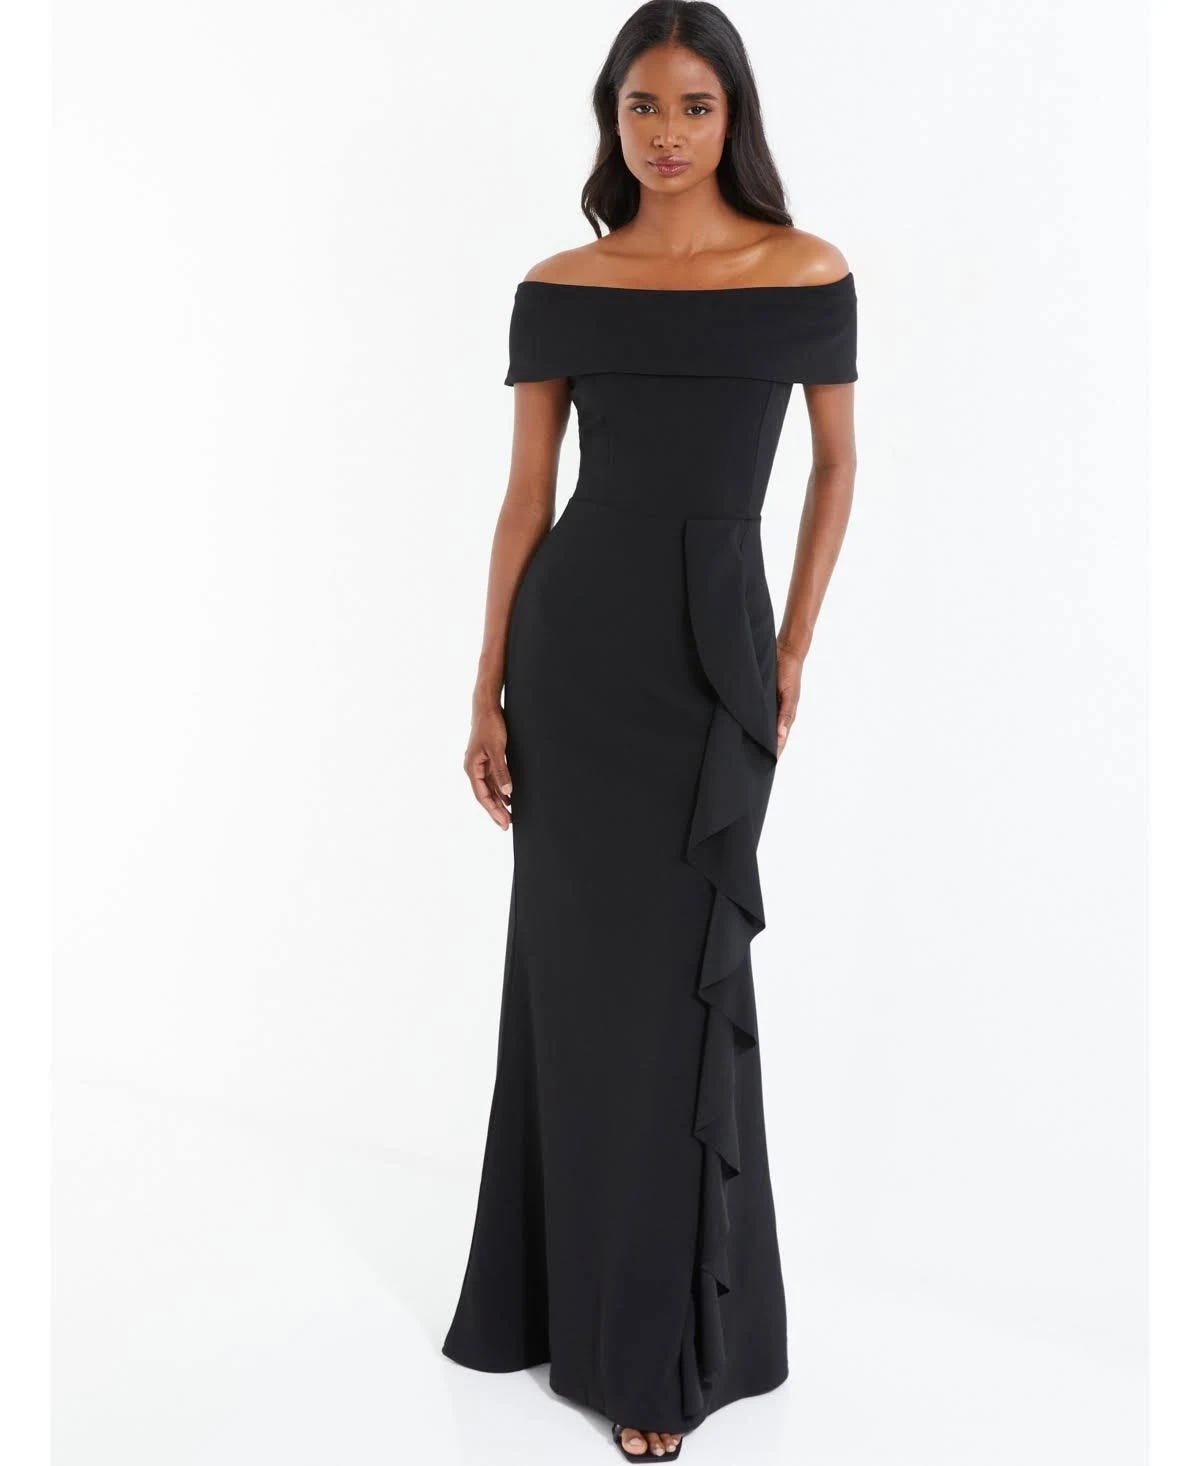 Sultry Black Off-Shoulder Maxi Dress | Image